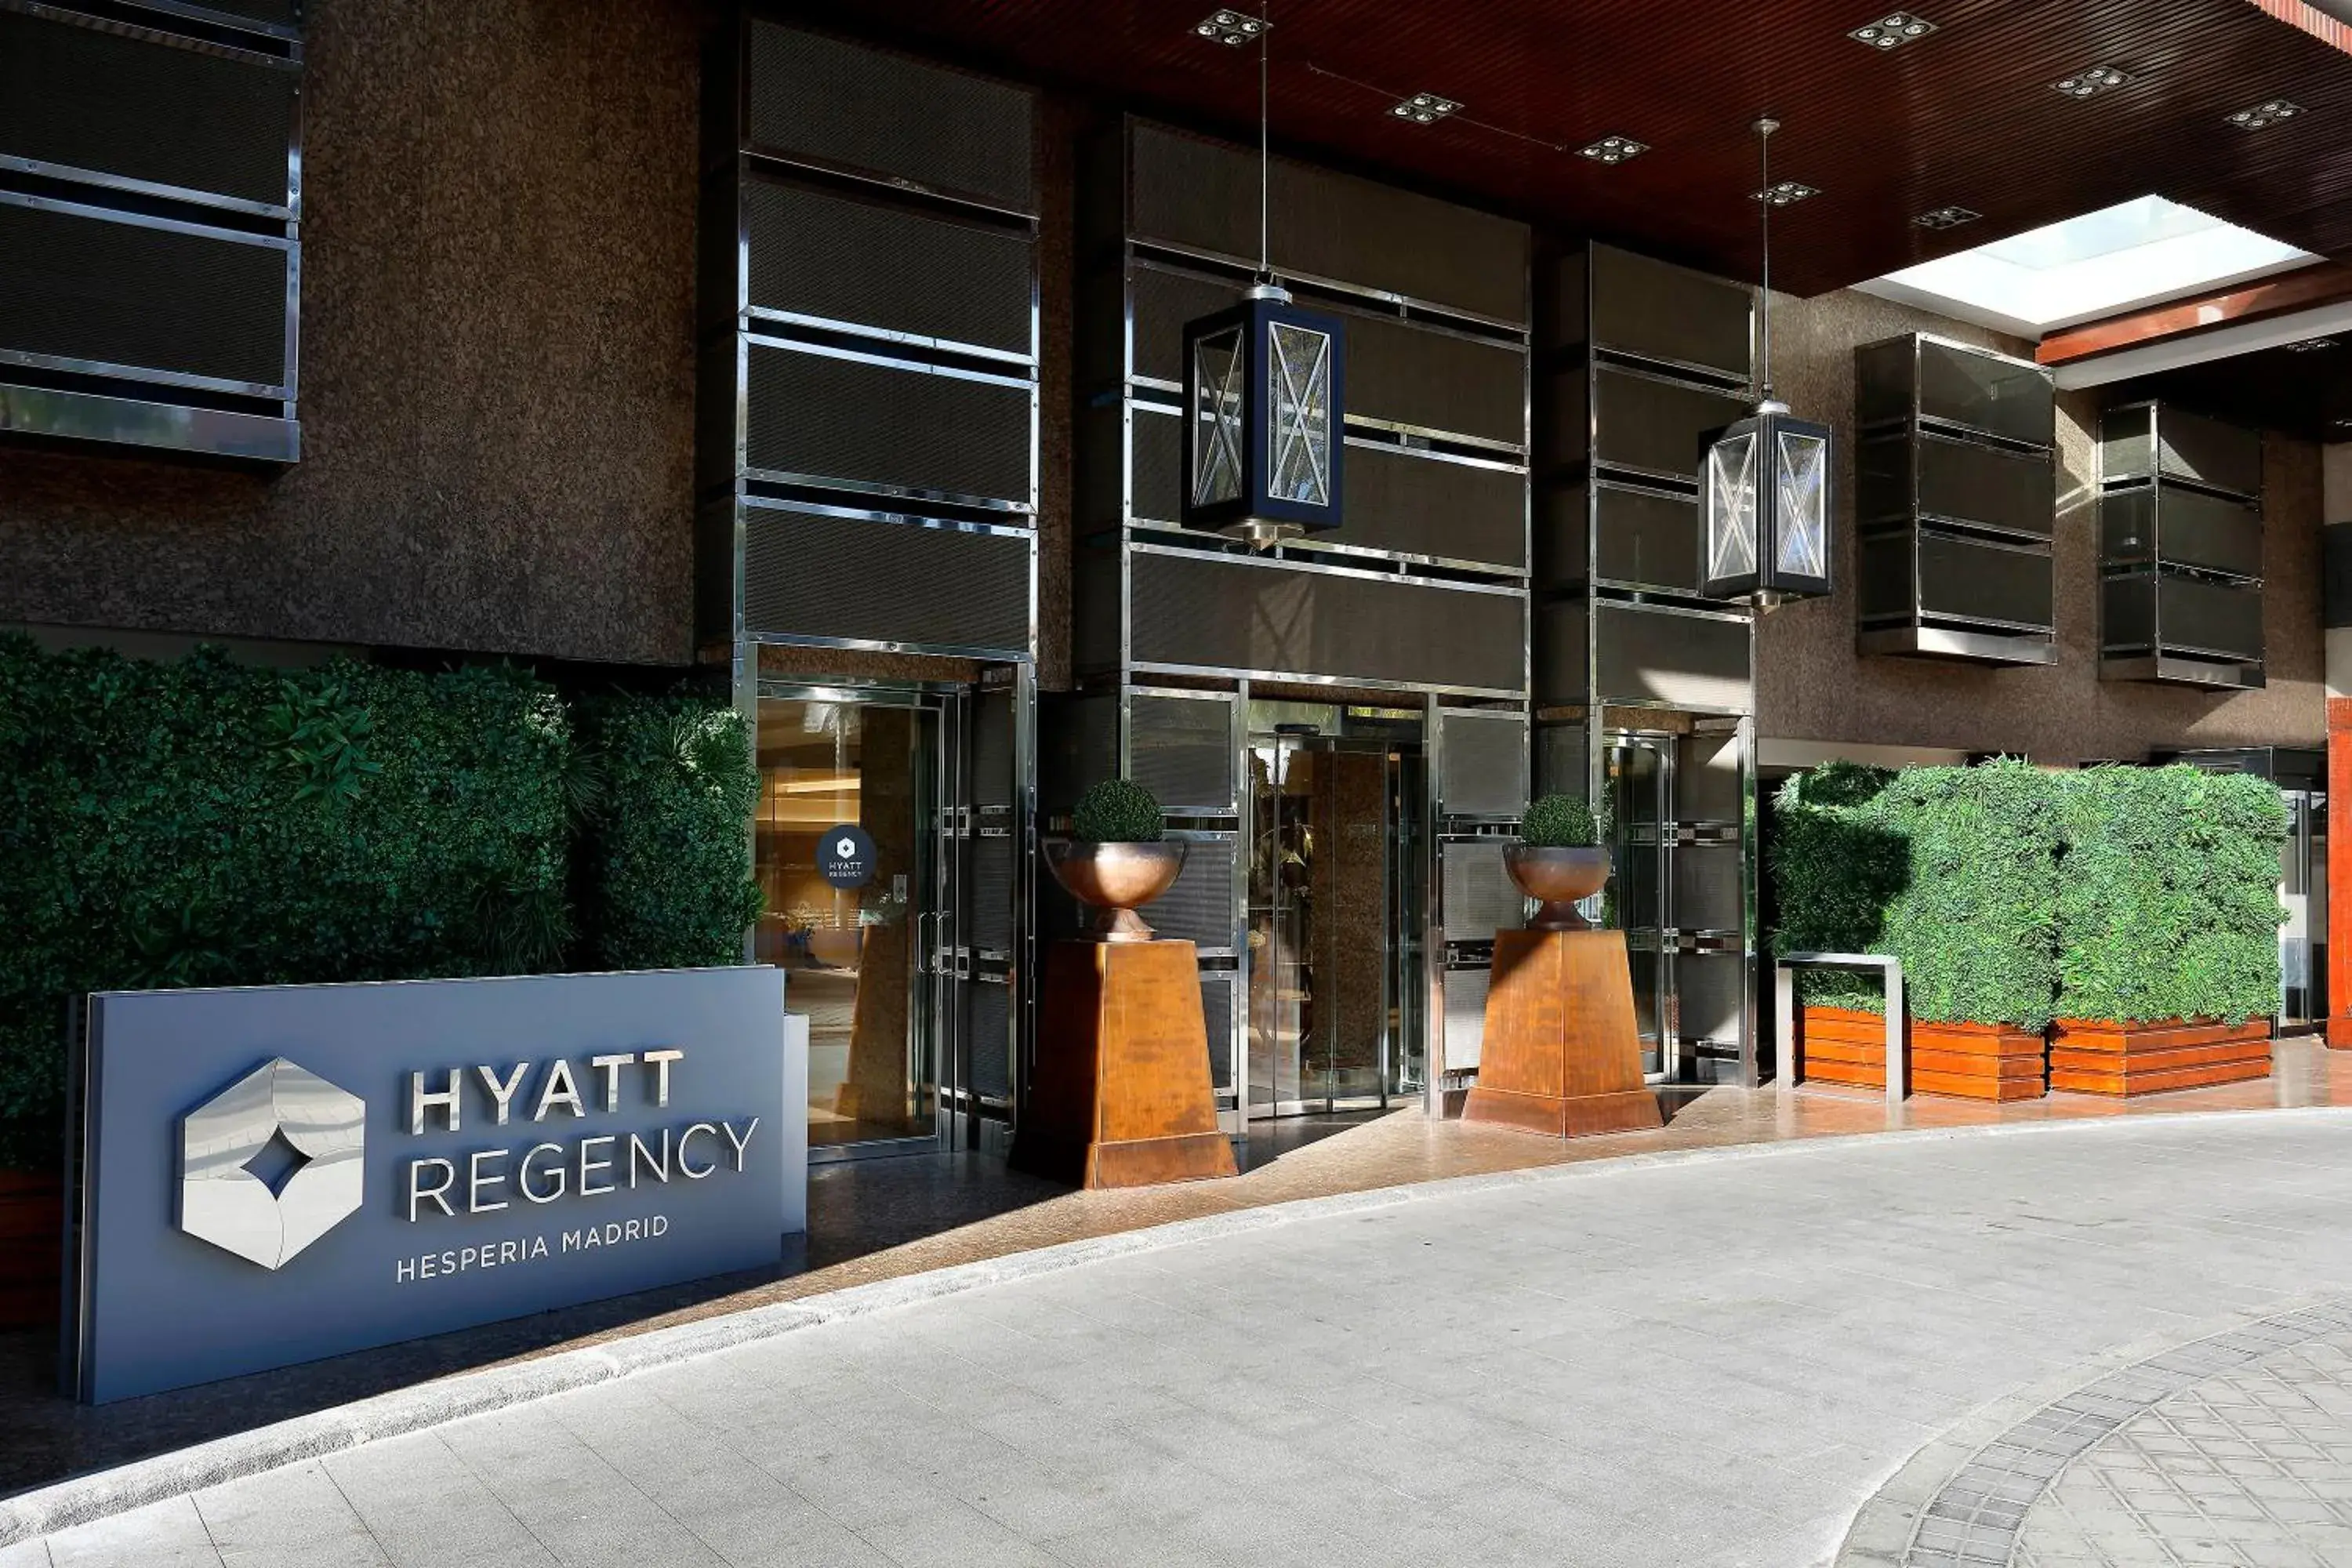 Facade/entrance in Hyatt Regency Hesperia Madrid